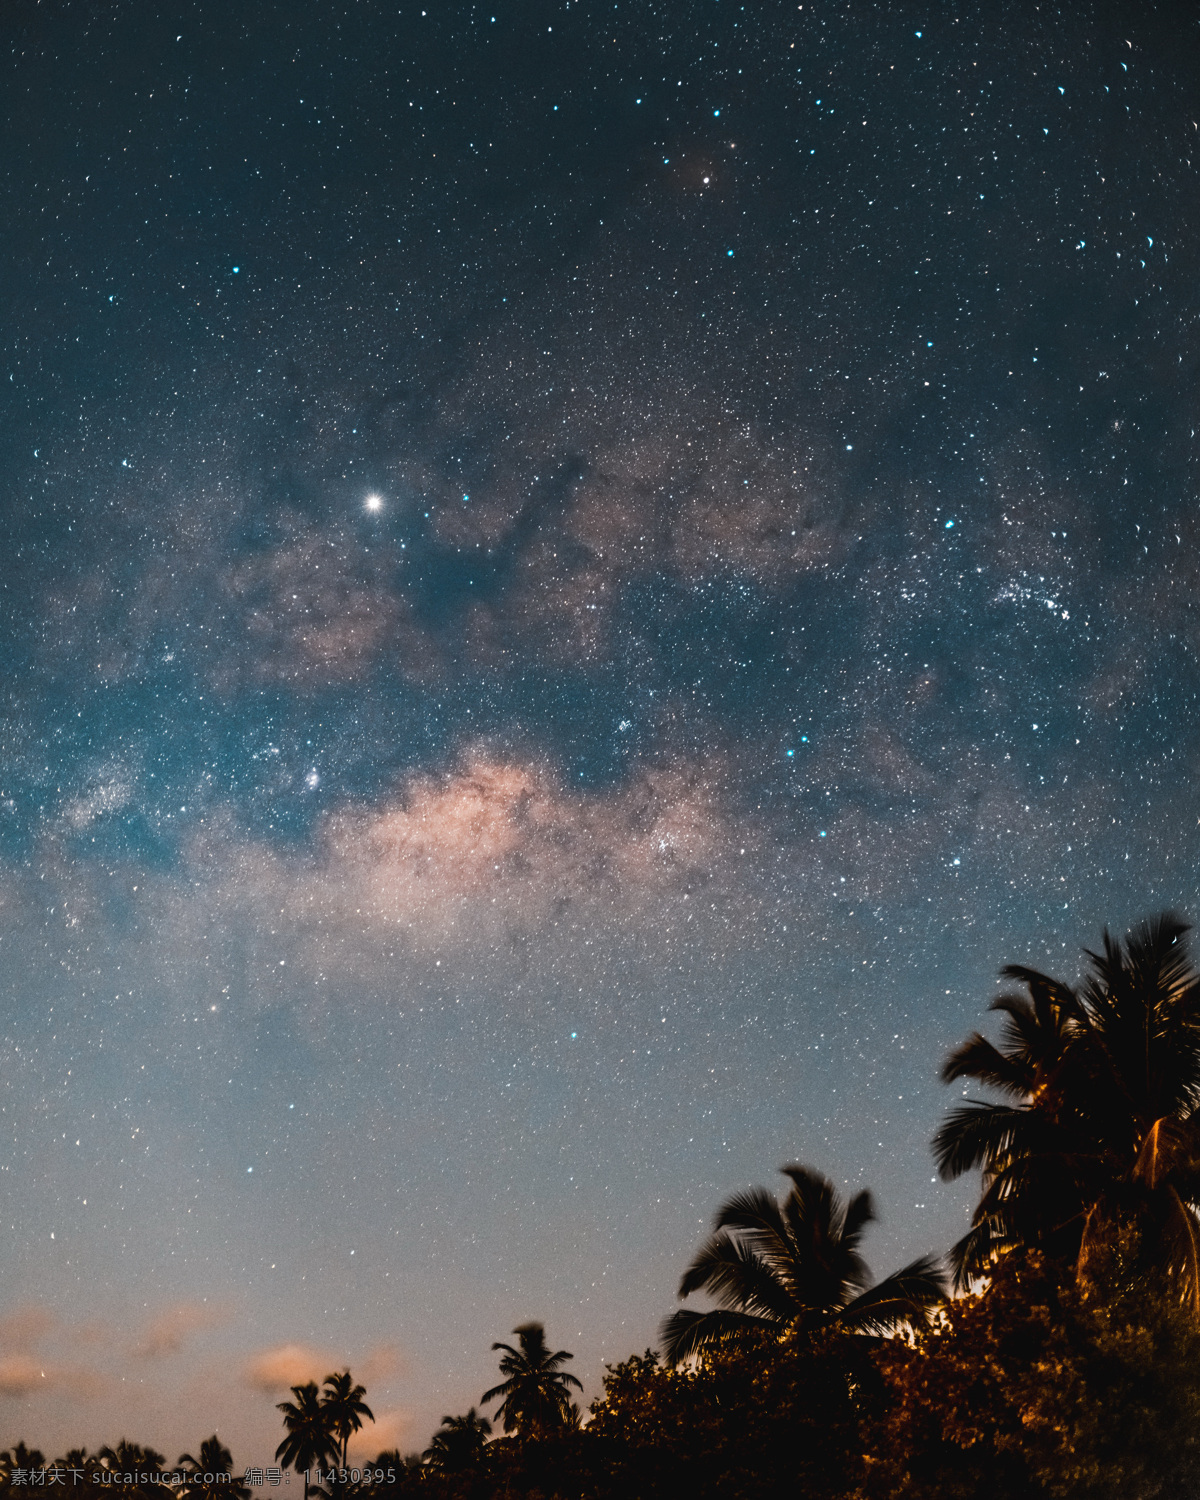 唯美 意境 海滩 夜晚 星空 浩瀚 银河 宇宙 星星 壁纸 黑夜 星河 繁星 太空 手机屏保 棕榈树 沙滩 自然景观 自然风光